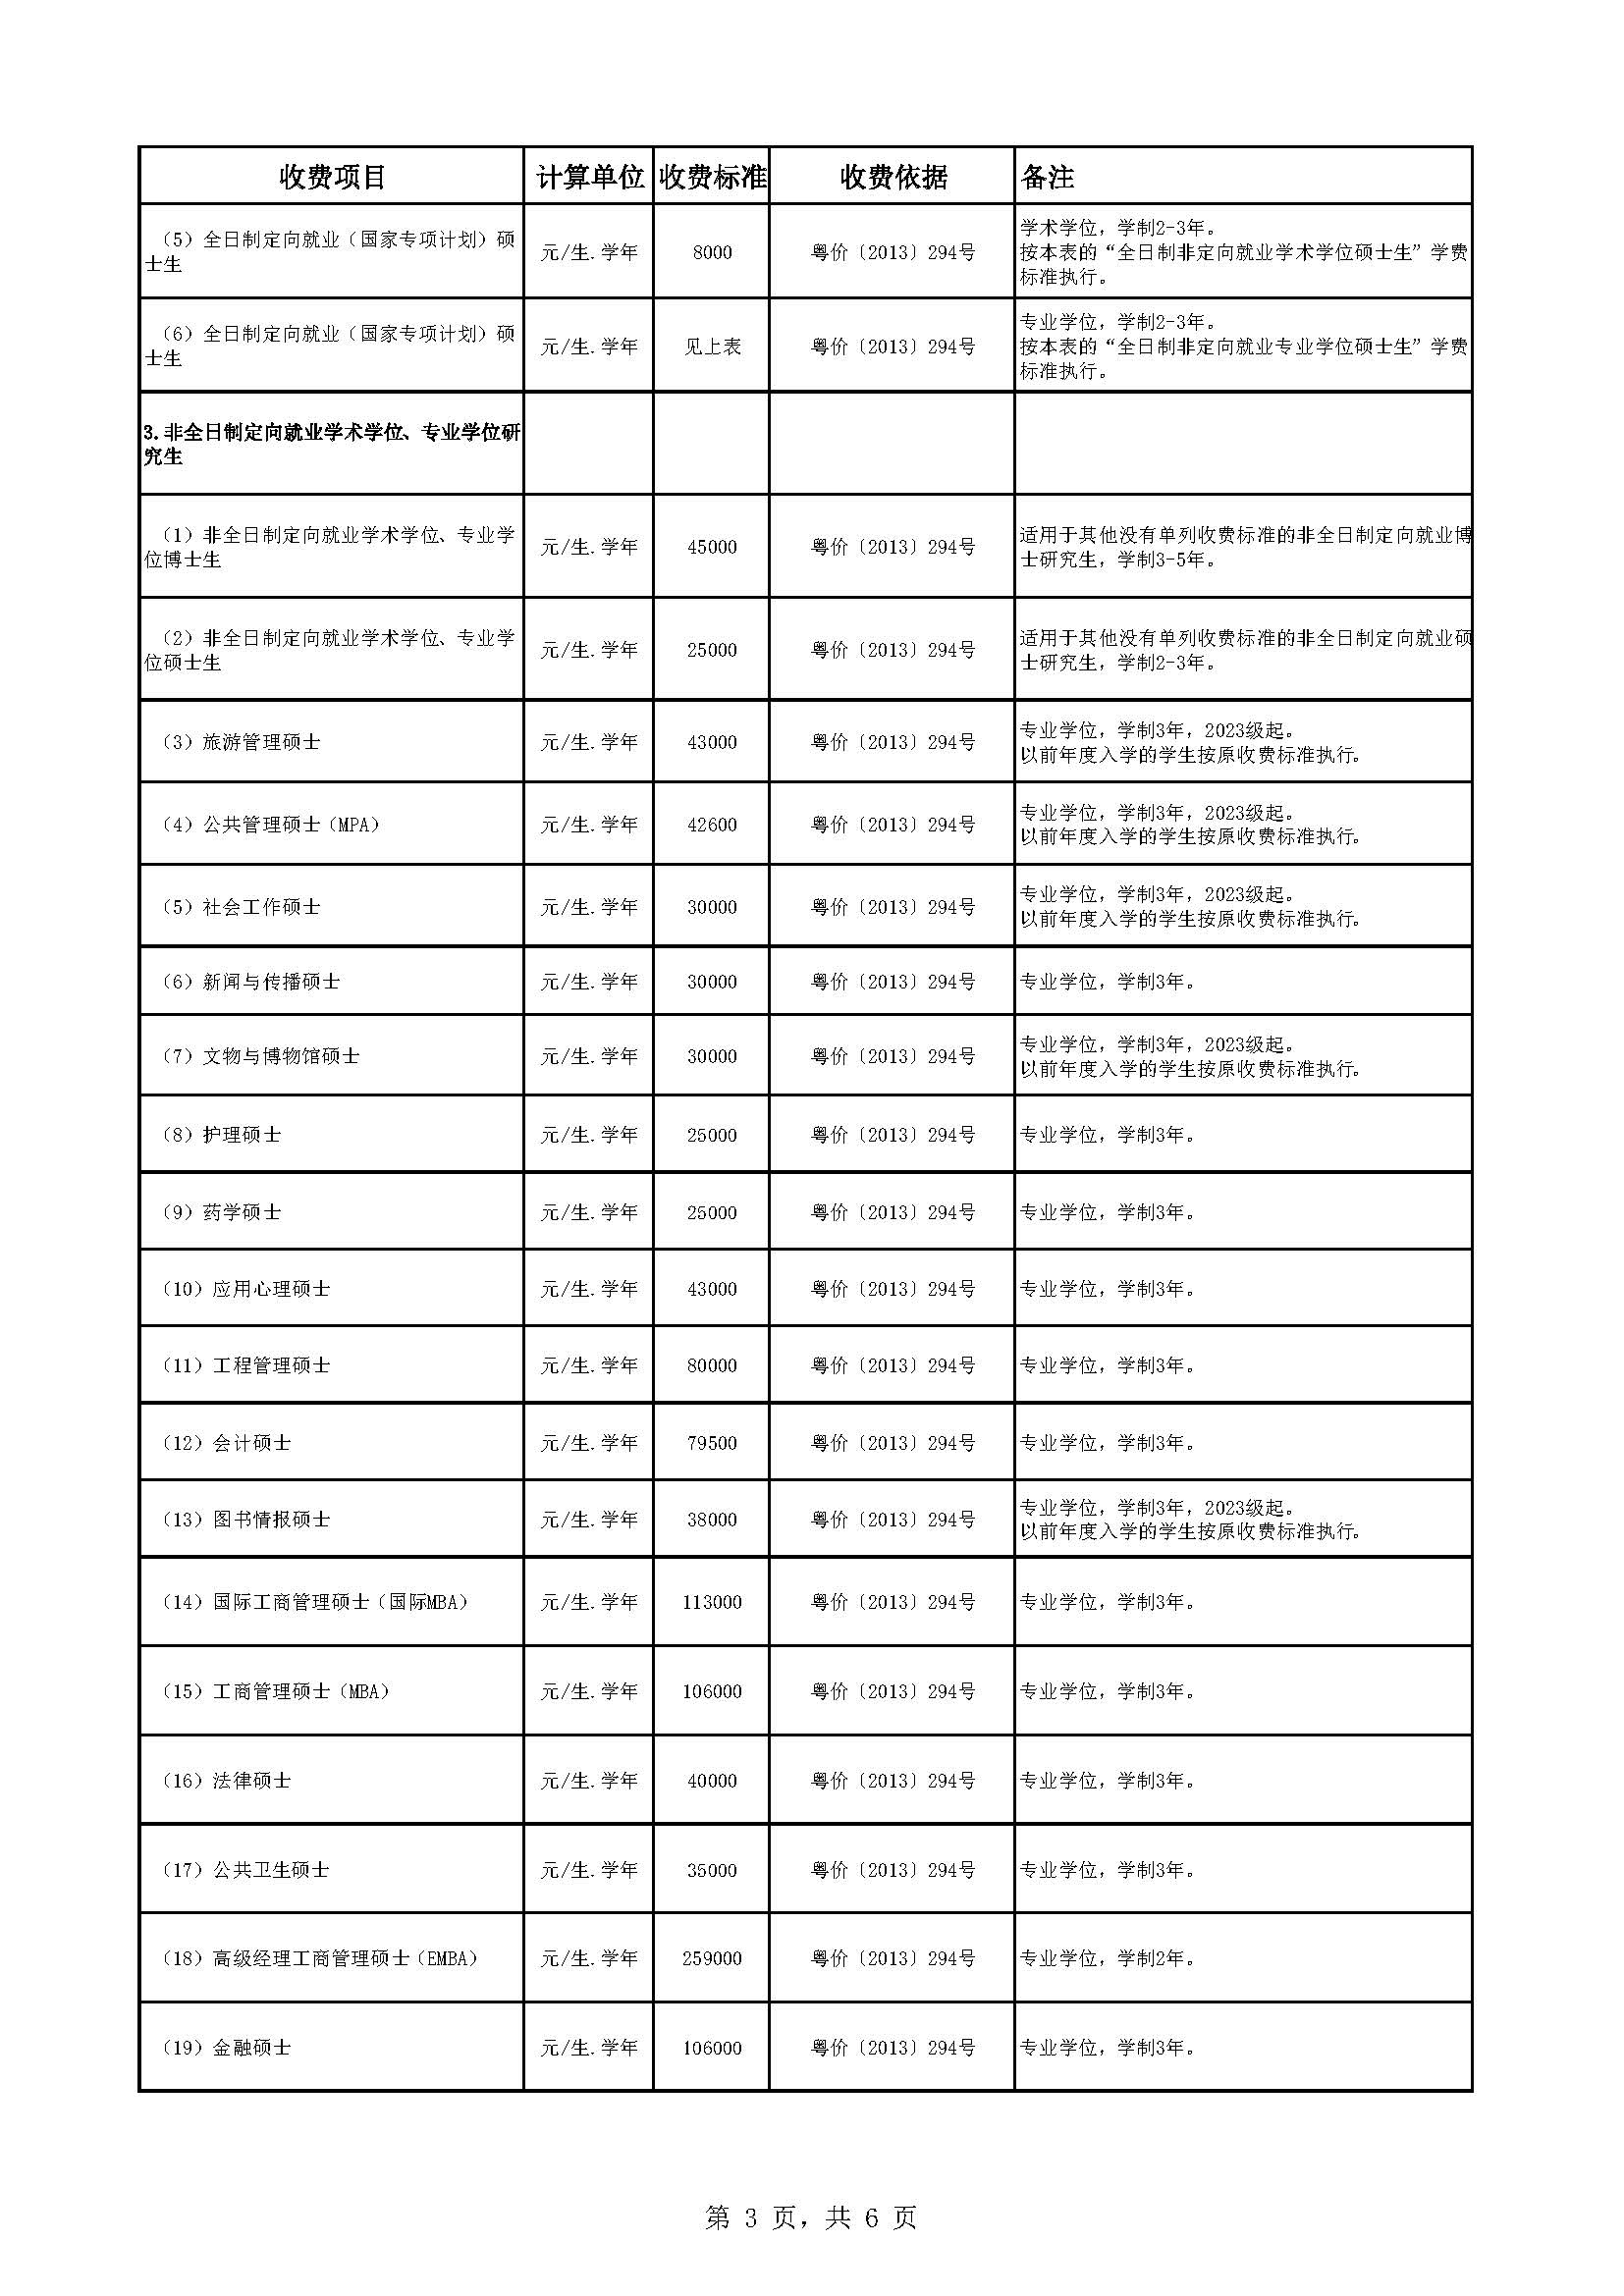 中山大学教育收费公示表（2022-2023年）_页面_3.jpg